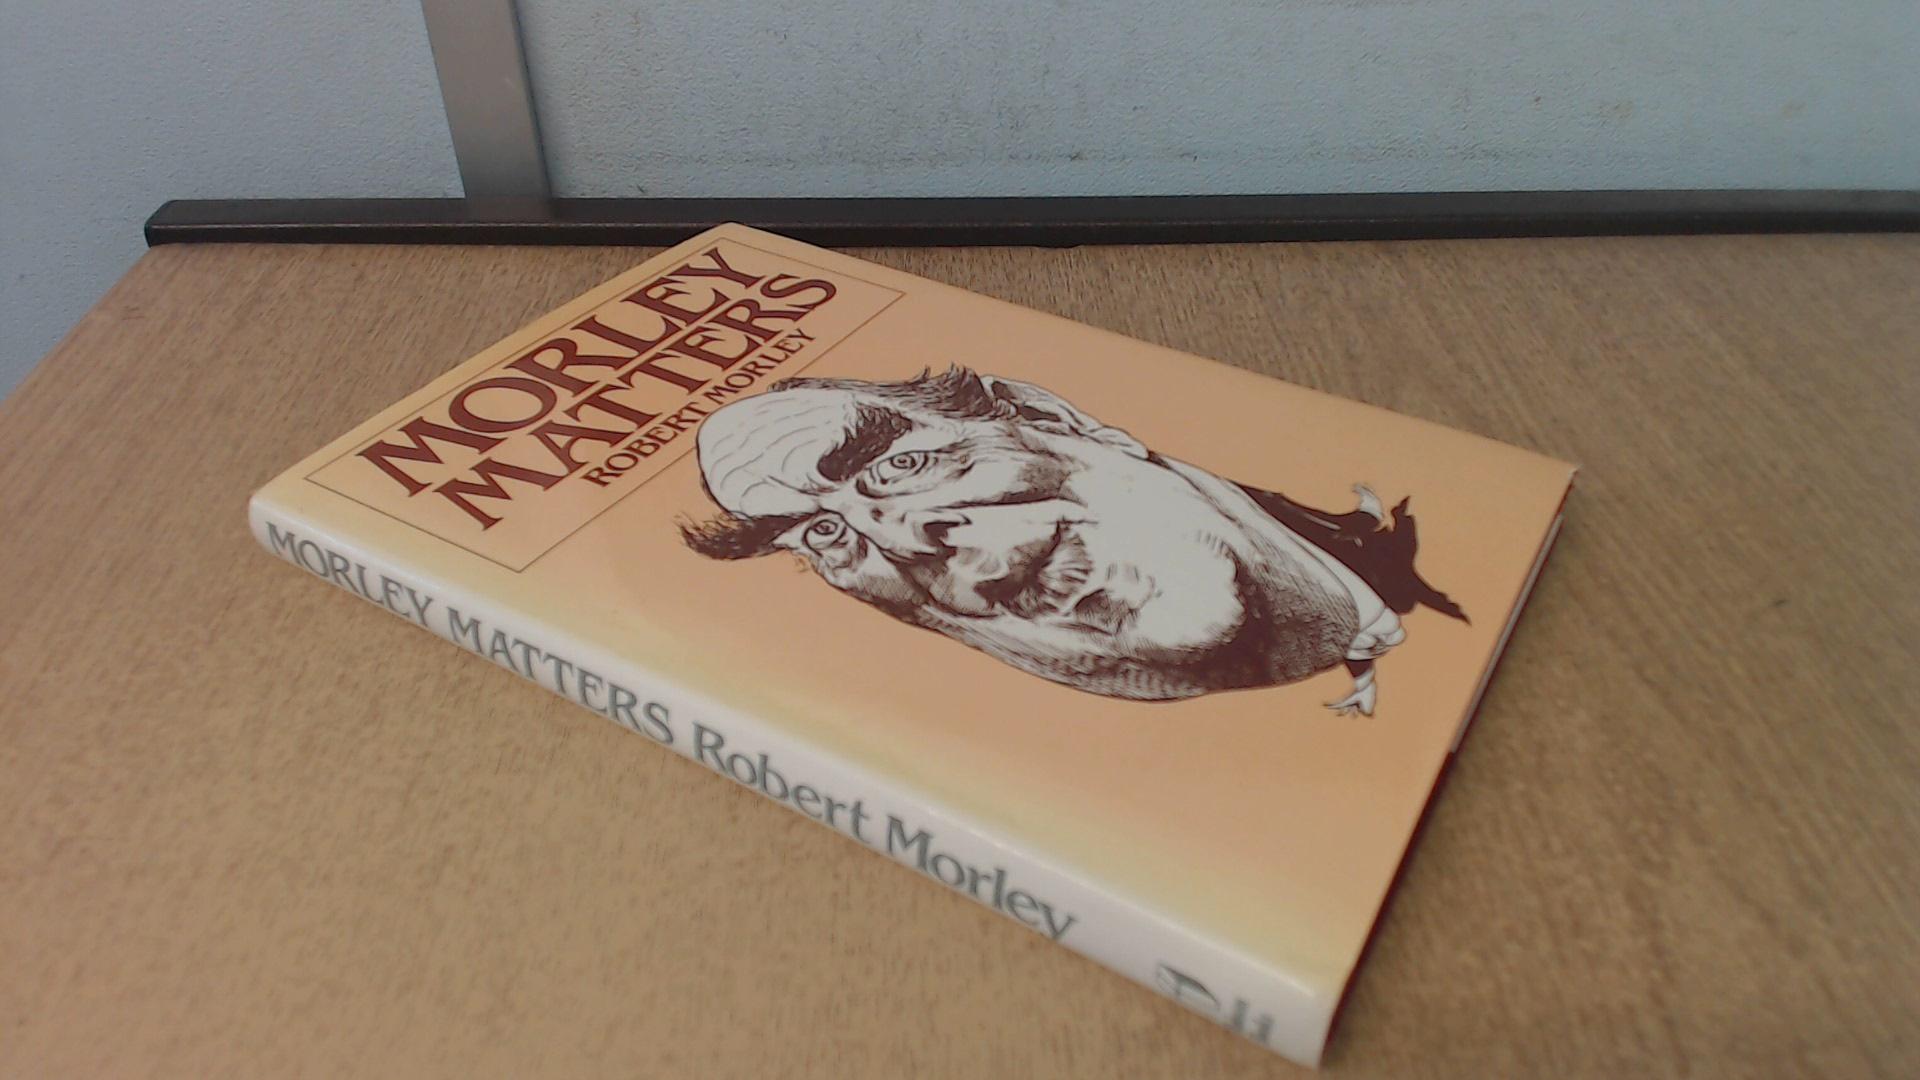 Morley Matters - Morley, Robert